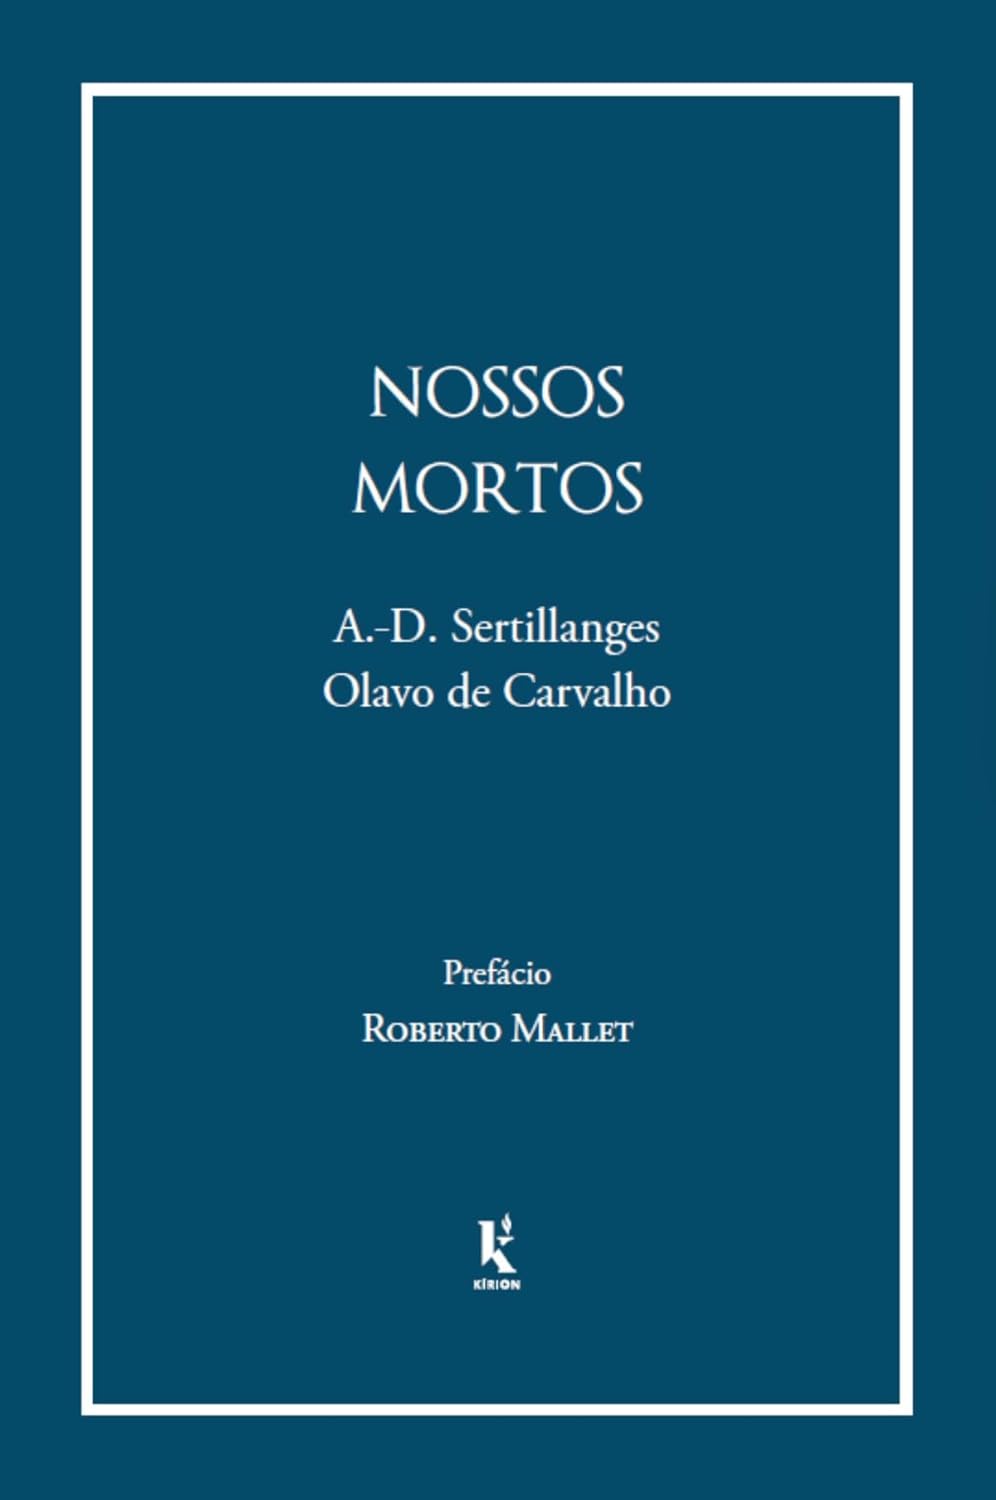 Nossos mortos - A.-D. Sertillanges & Olavo de Carvalho